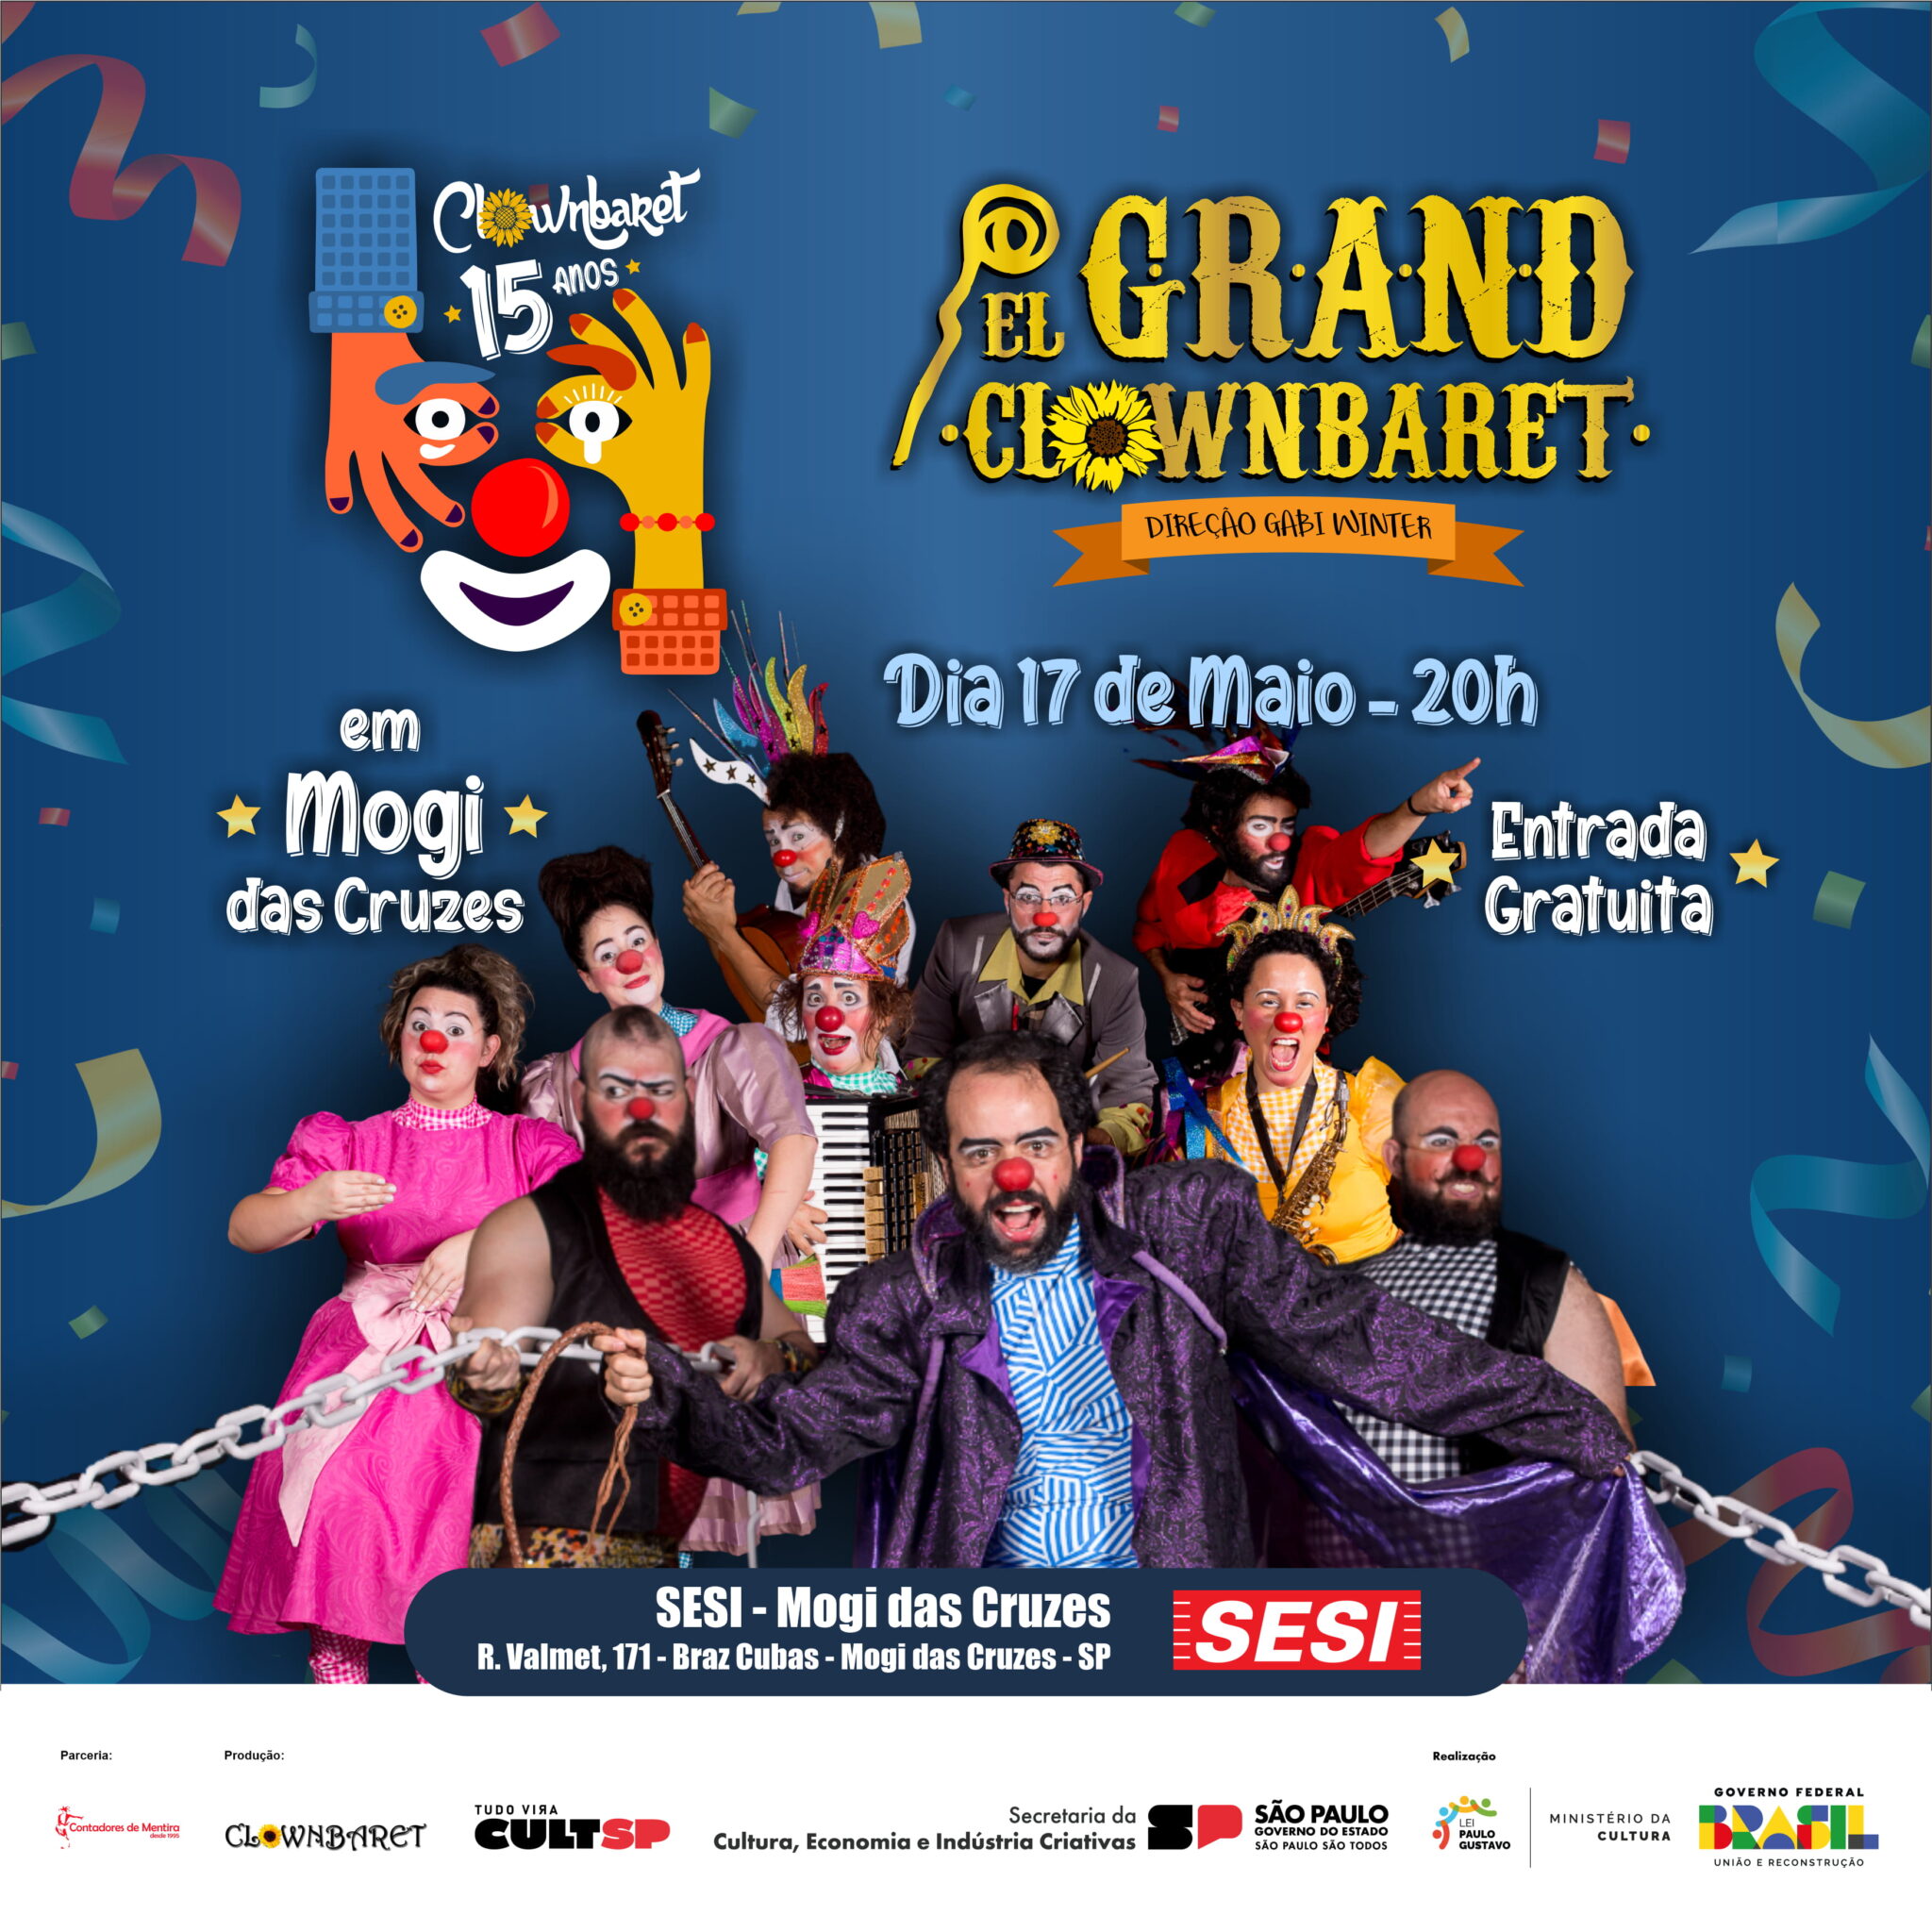 Espetáculo circense El Grand Clownbaret dia 16/5 no Teatro Alfredo Mesquita com tradução em libras e audidescrição